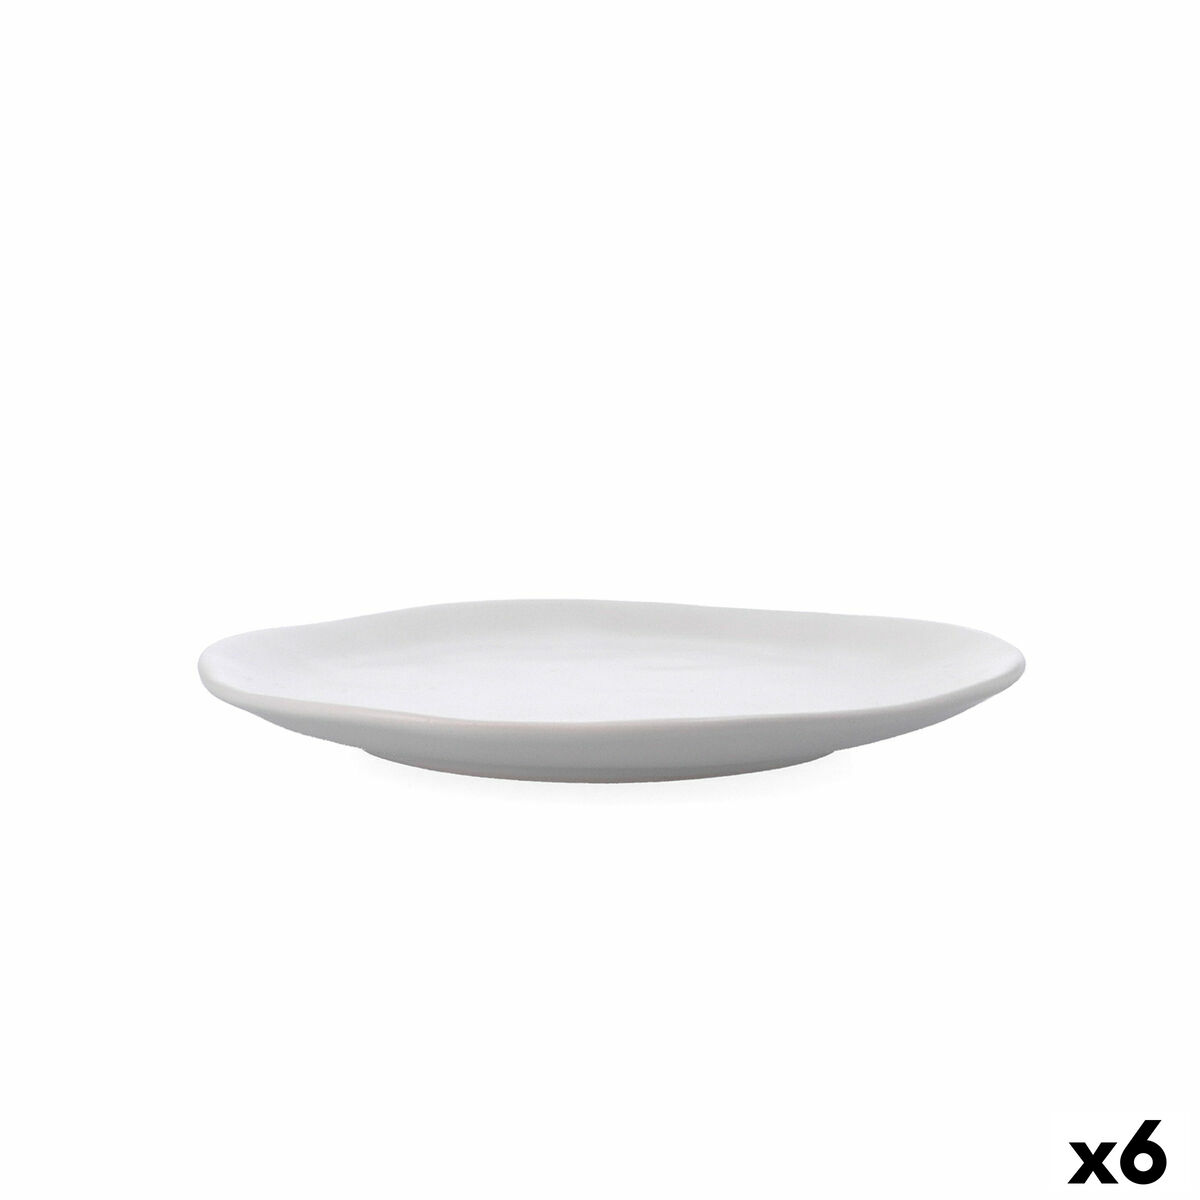 Piatto da pranzo Bidasoa Cosmos Bianco Ceramica 23 cm (6 Unità)